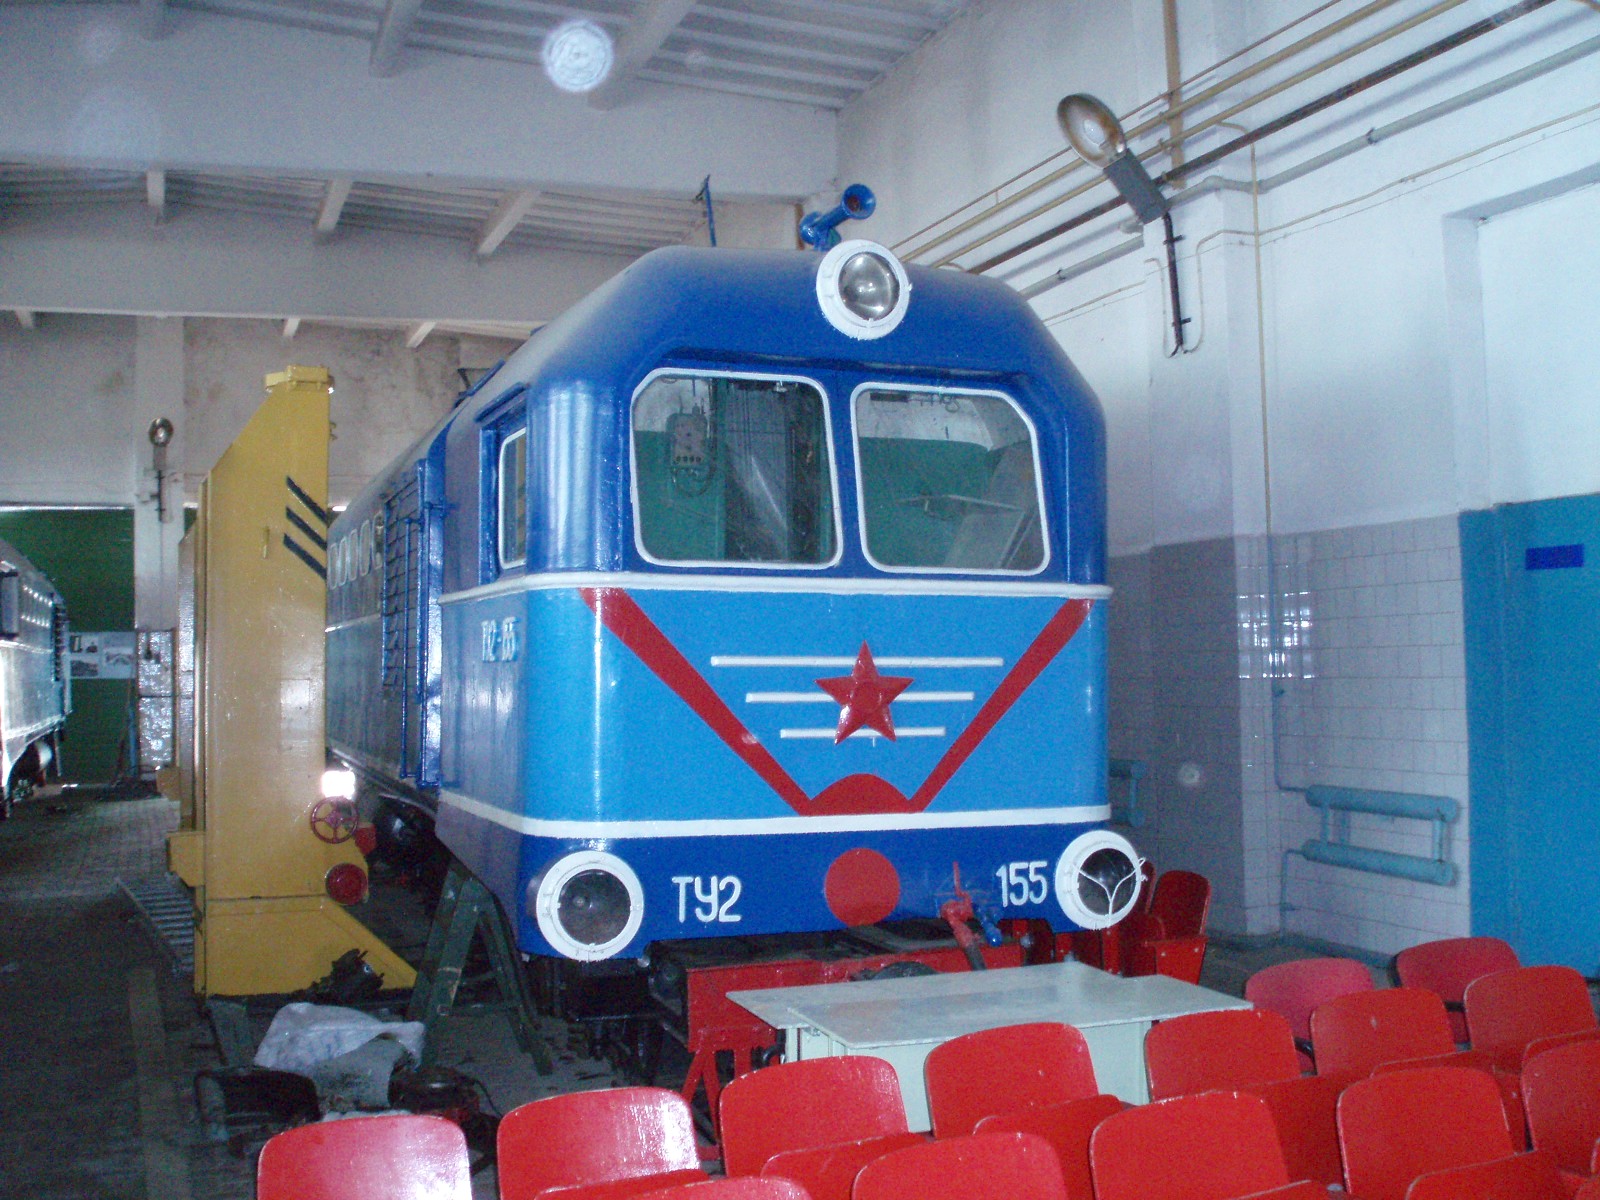 Малая Горьковская (Нижегородская) детская железная дорога - фотографии, сделанные в 2006 году (часть 7)